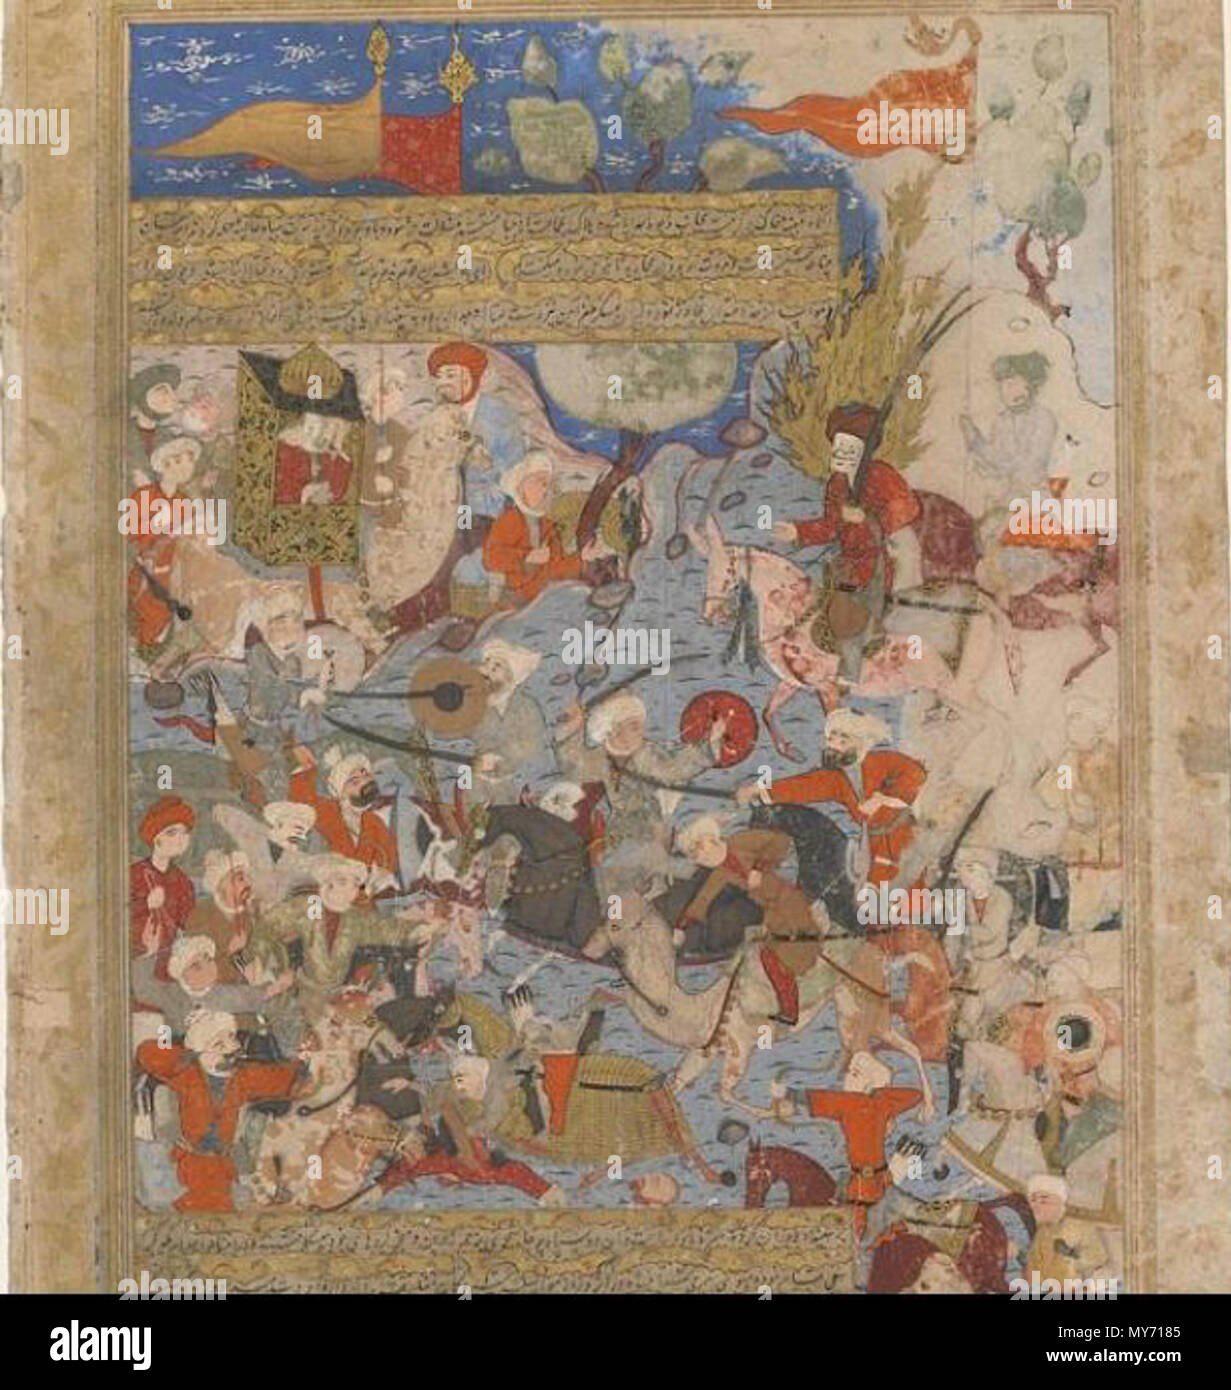 . Inglese: Folio da un Rawdat al-Safa (giardino di felicity) da Mirkhwand (d. 1498); tergo: Ali e Aisha alla battaglia del cammello; recto: 1571-1572 Testo periodo di Safavid acquerello opaco, inchiostro e oro su carta H: 41,3 W: 27,6 cm Shiraz, Iran . Il 10 luglio 2014, 16:45:29. Mirkhwand (d. 1498) 66 battaglia del cammello dalla Mirkhwand Foto Stock